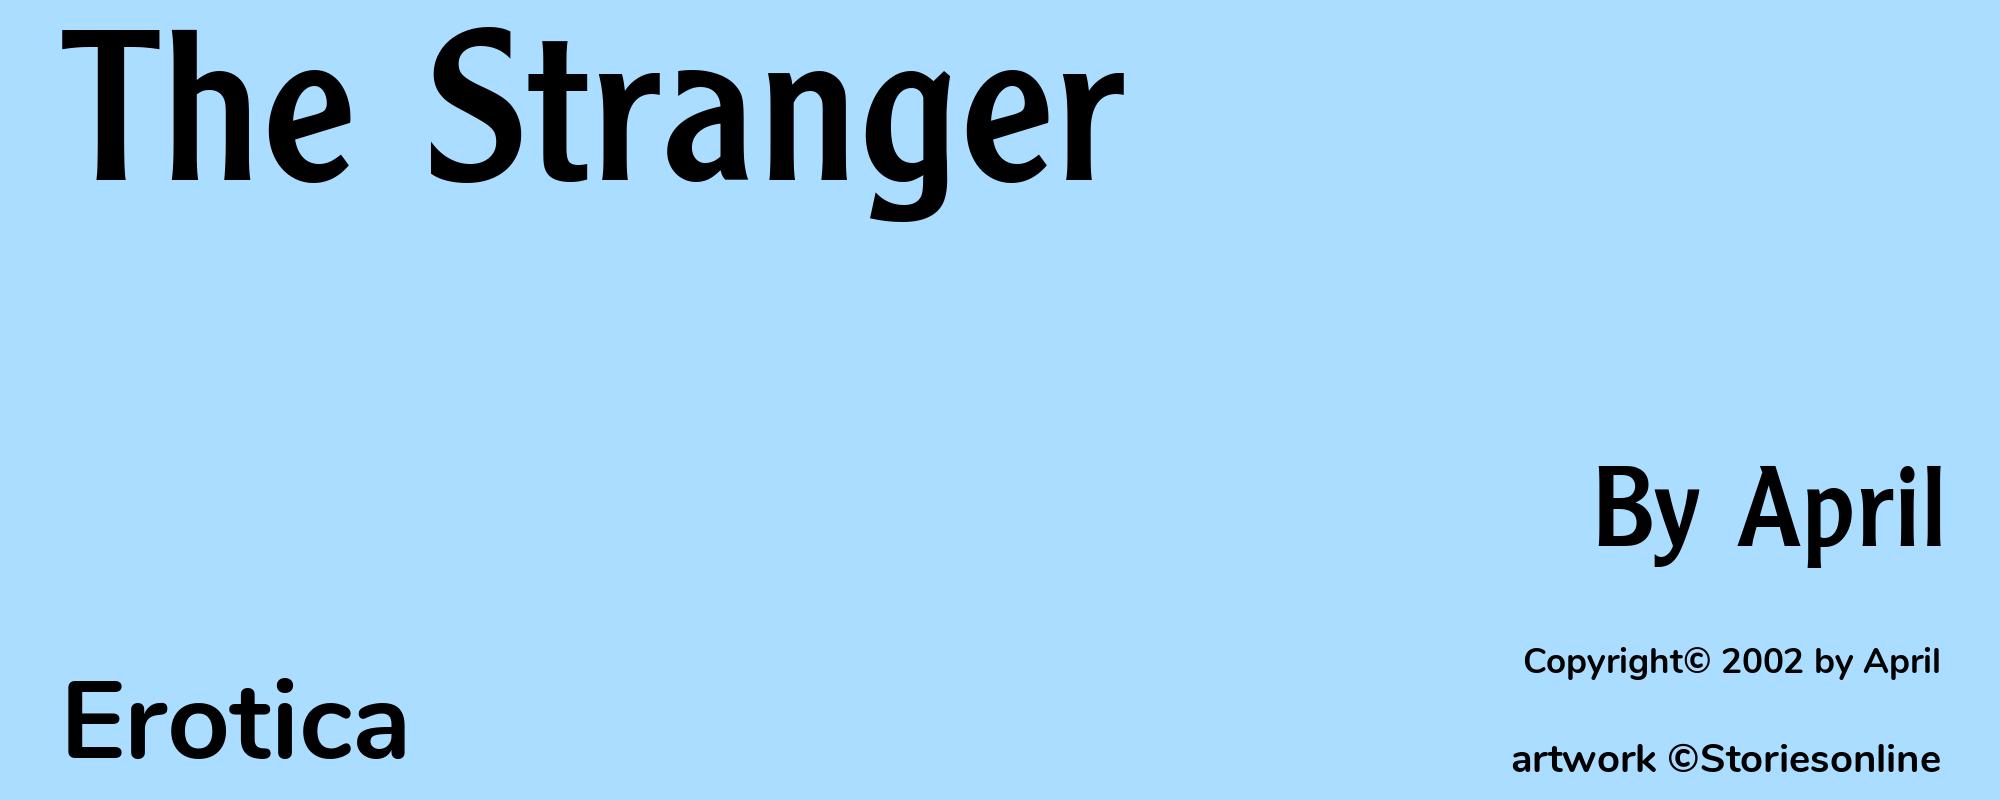 The Stranger - Cover